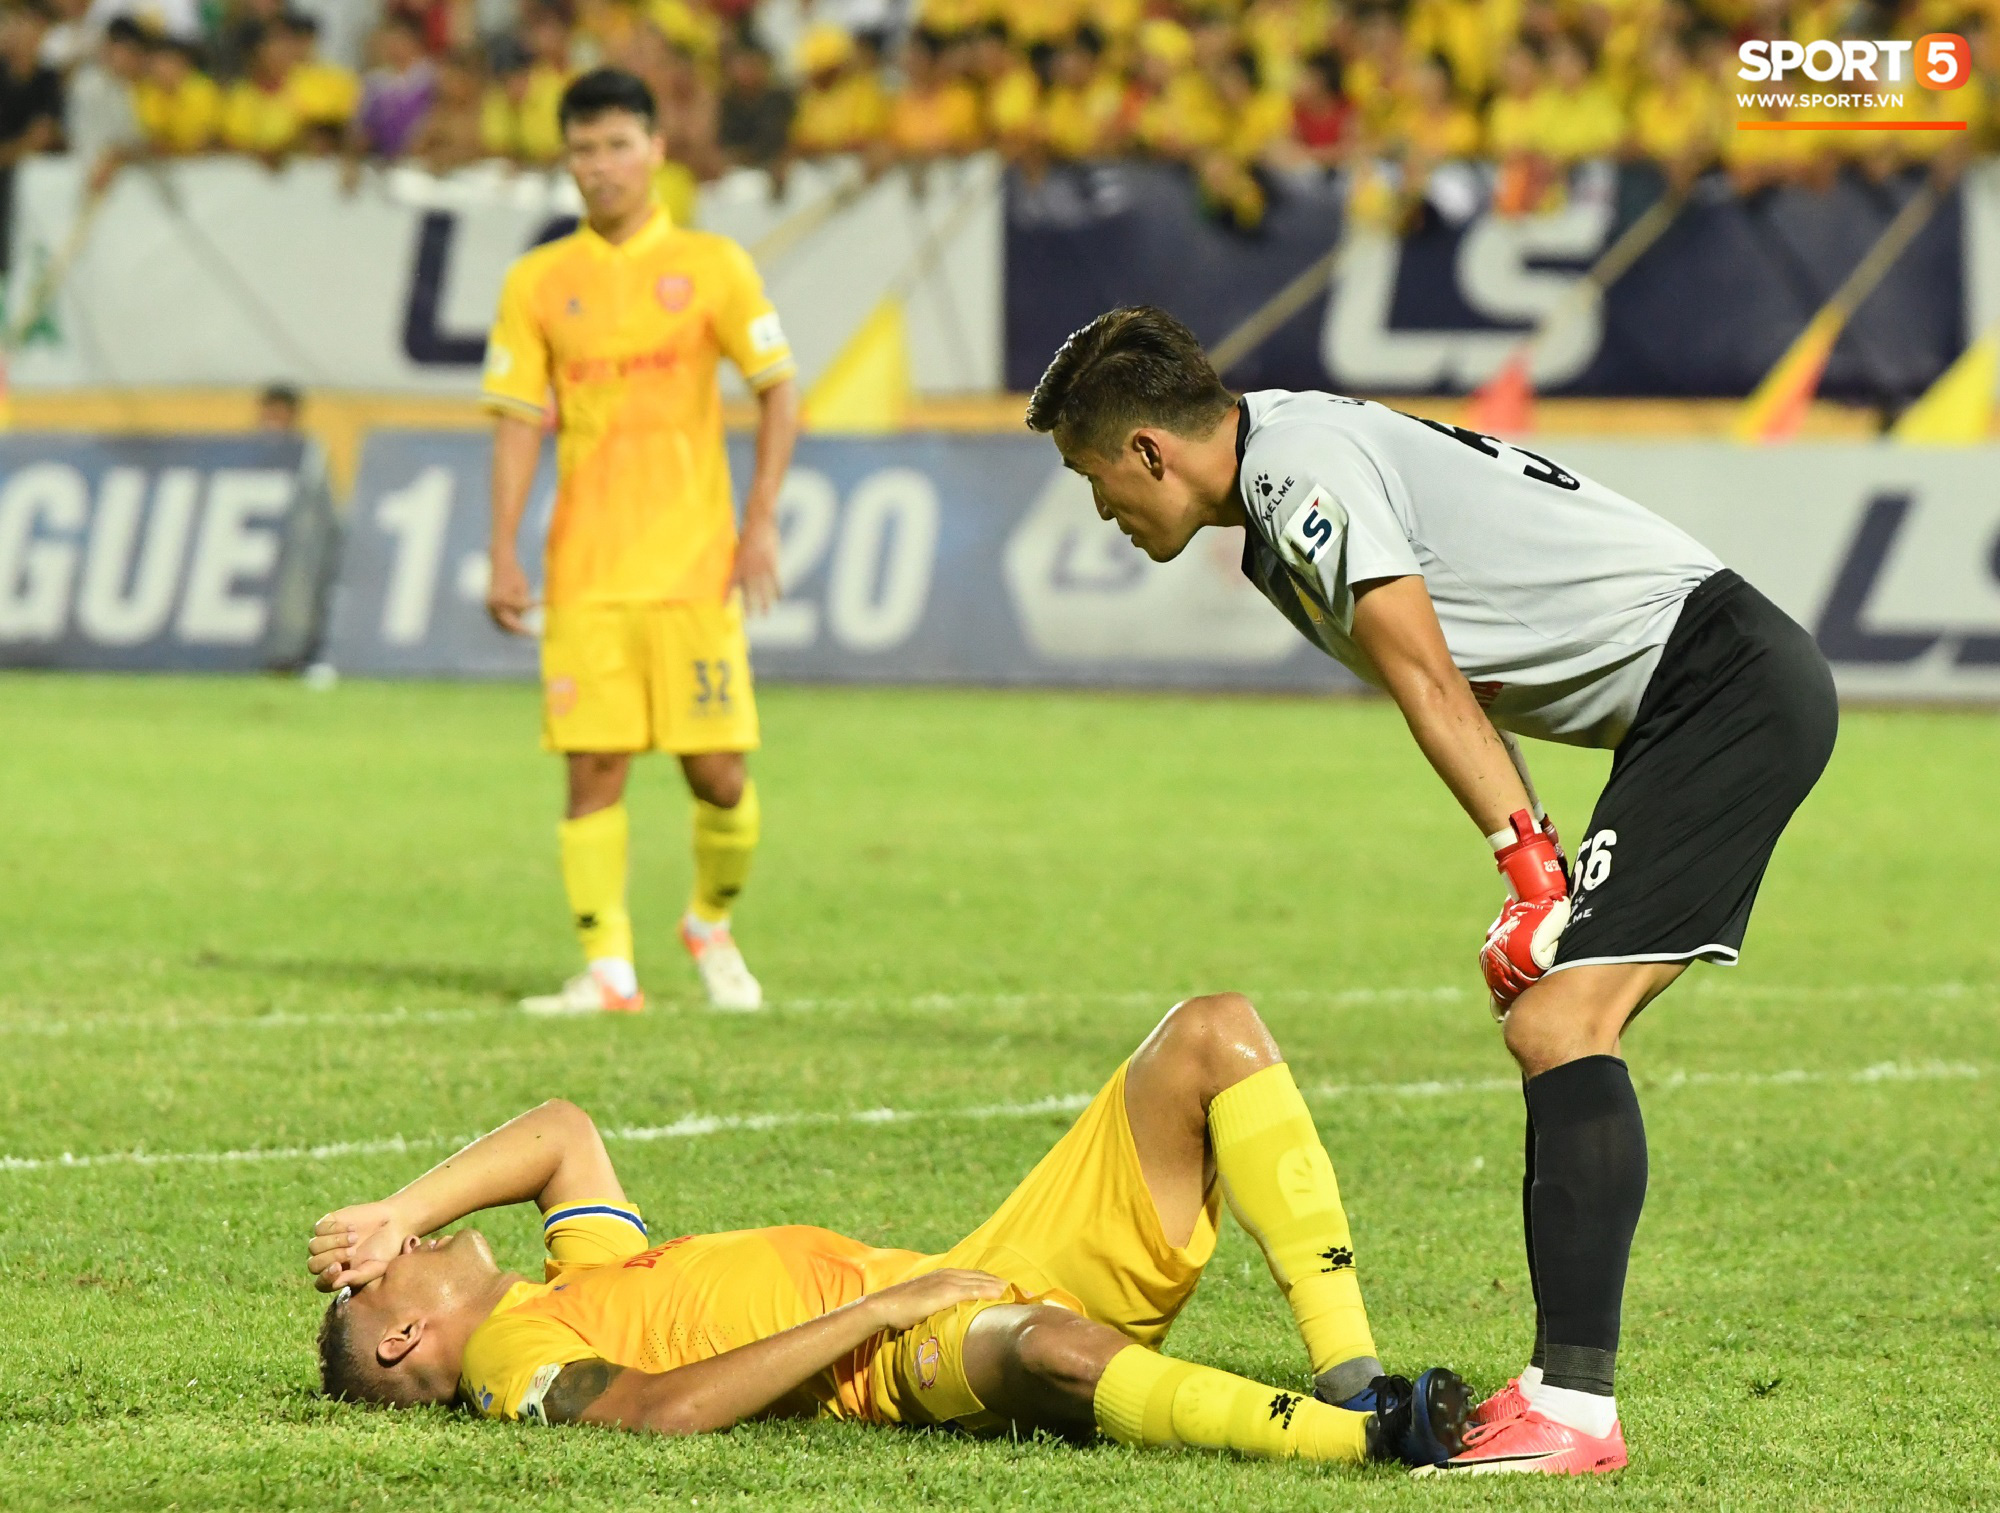  Đội trưởng Quảng Nam phát cáu vì đối thủ tự nhiên nằm sân, còn đội ngũ y tế thì quá chậm chạm - Ảnh 6.